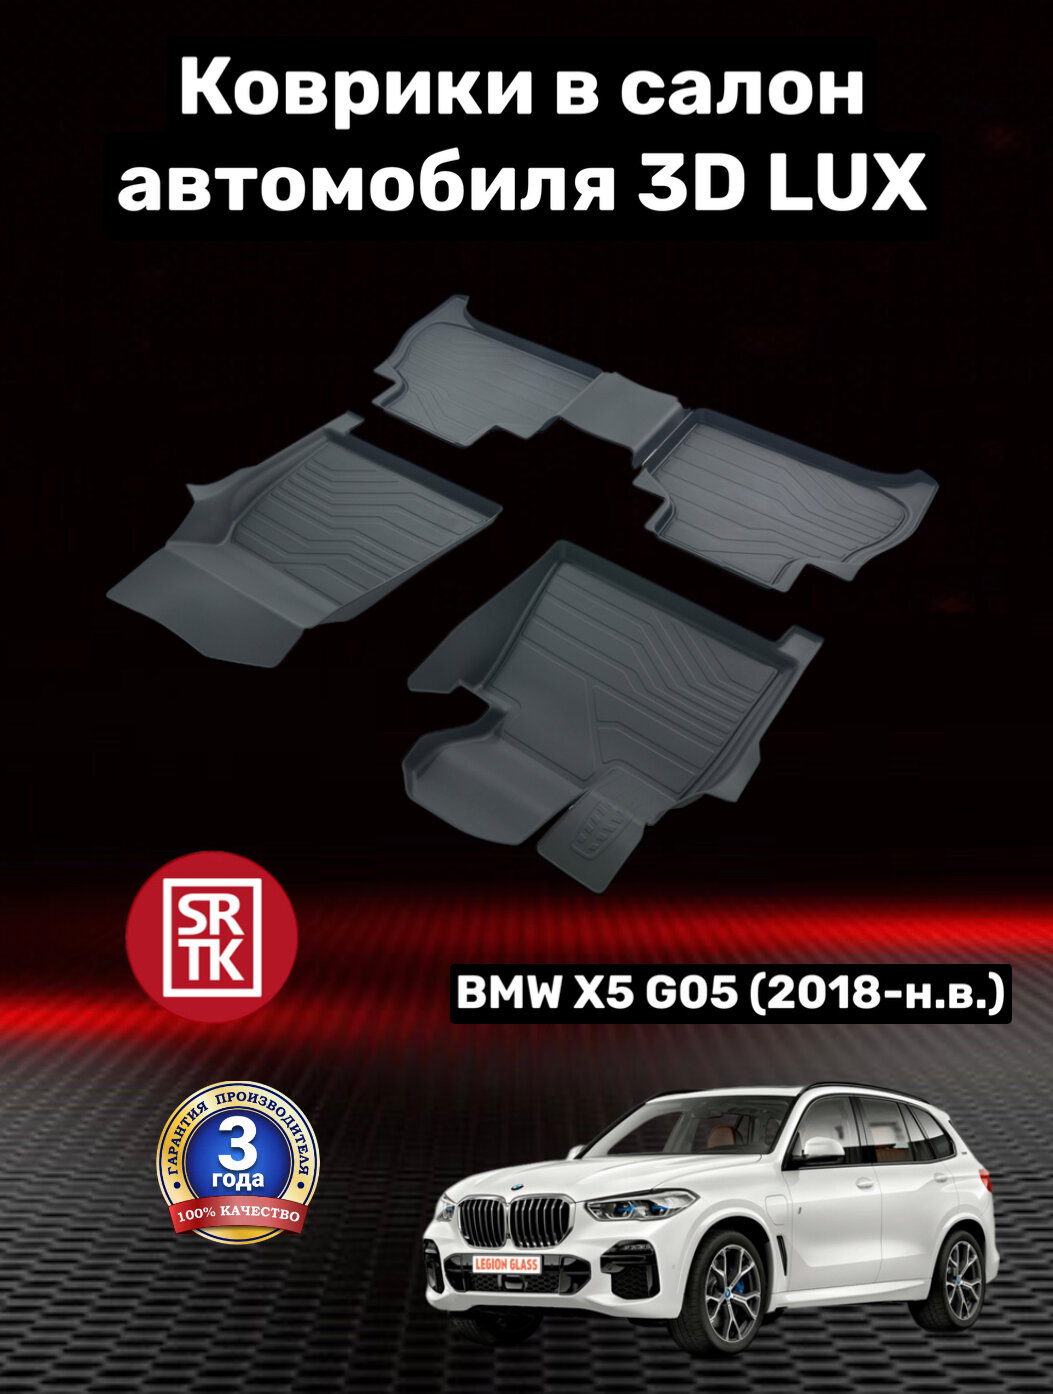 Ковры резиновые 3D LUX БМВ Х5 Г05 (2018-)/BMW X5 G05 SRTK (Саранск) комплект в салон